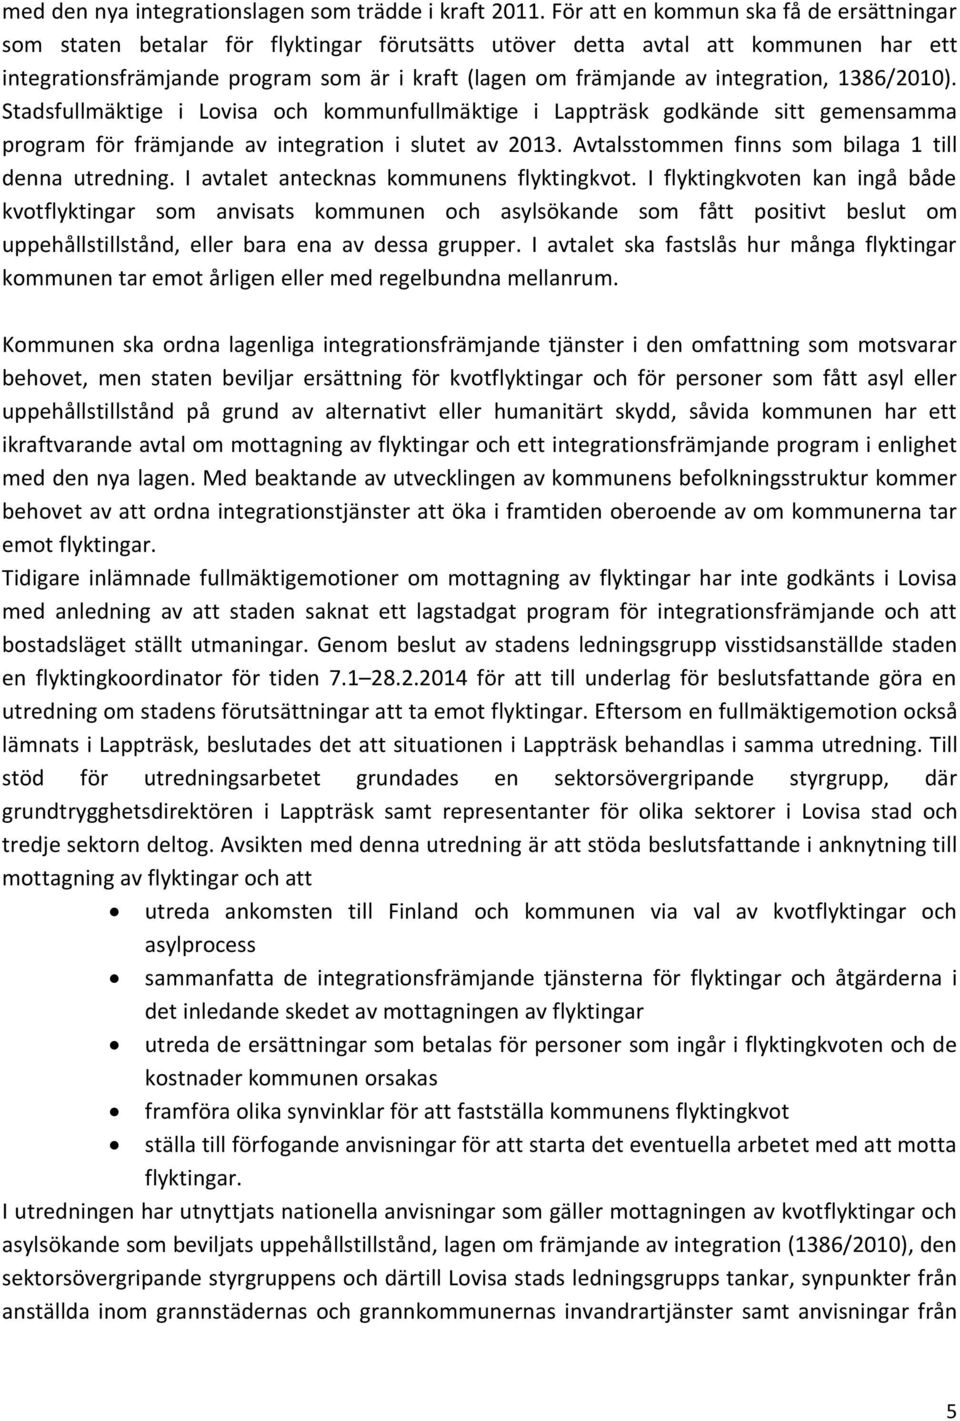 integration, 1386/2010). Stadsfullmäktige i Lovisa och kommunfullmäktige i Lappträsk godkände sitt gemensamma program för främjande av integration i slutet av 2013.